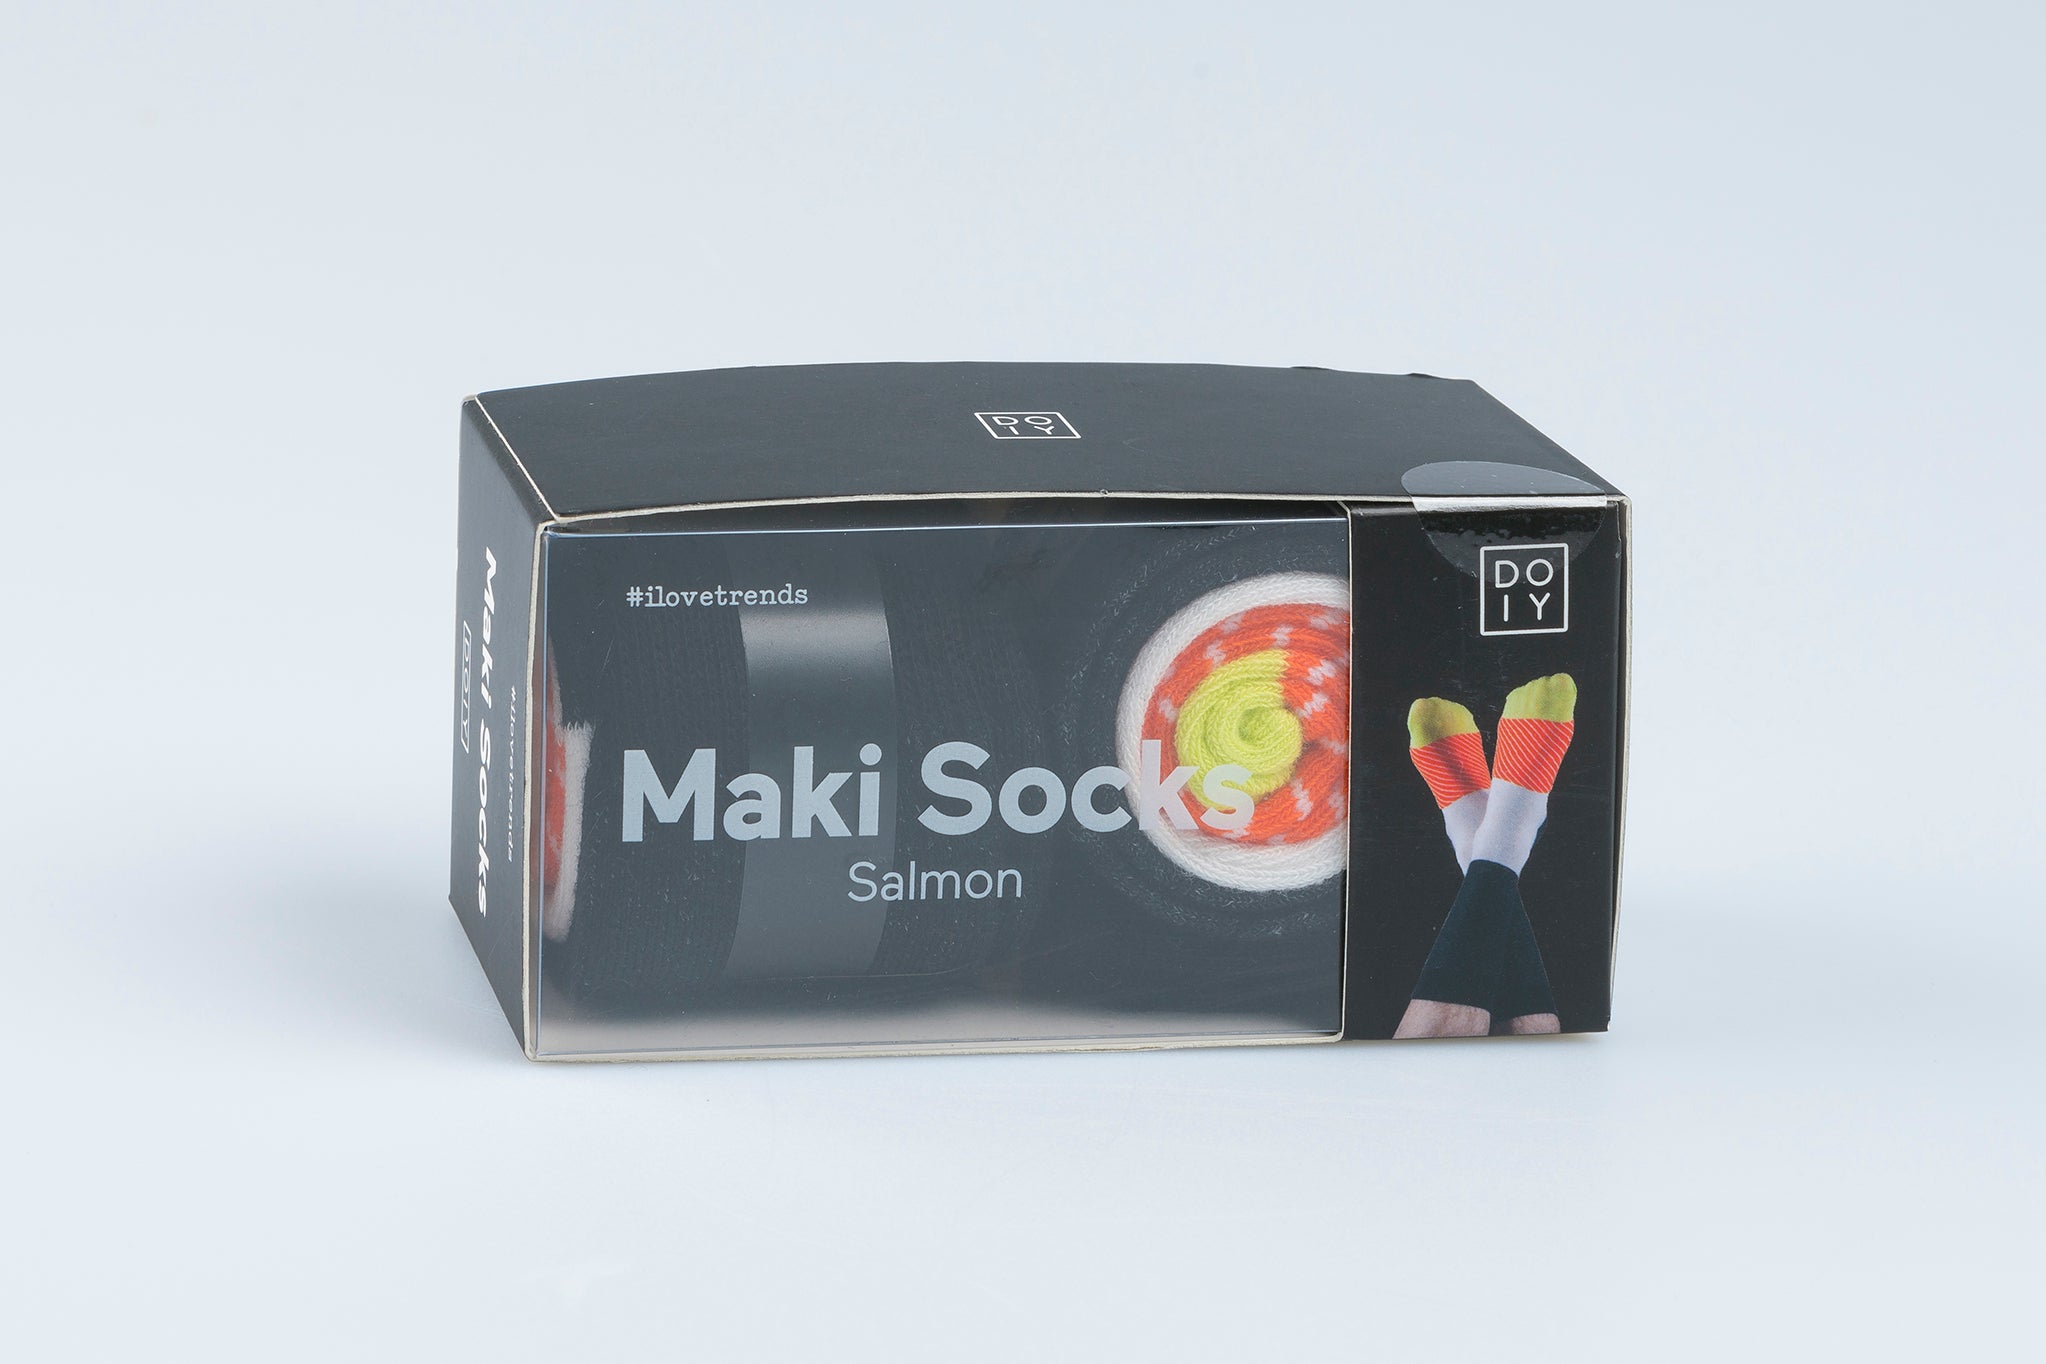 Maki Socks